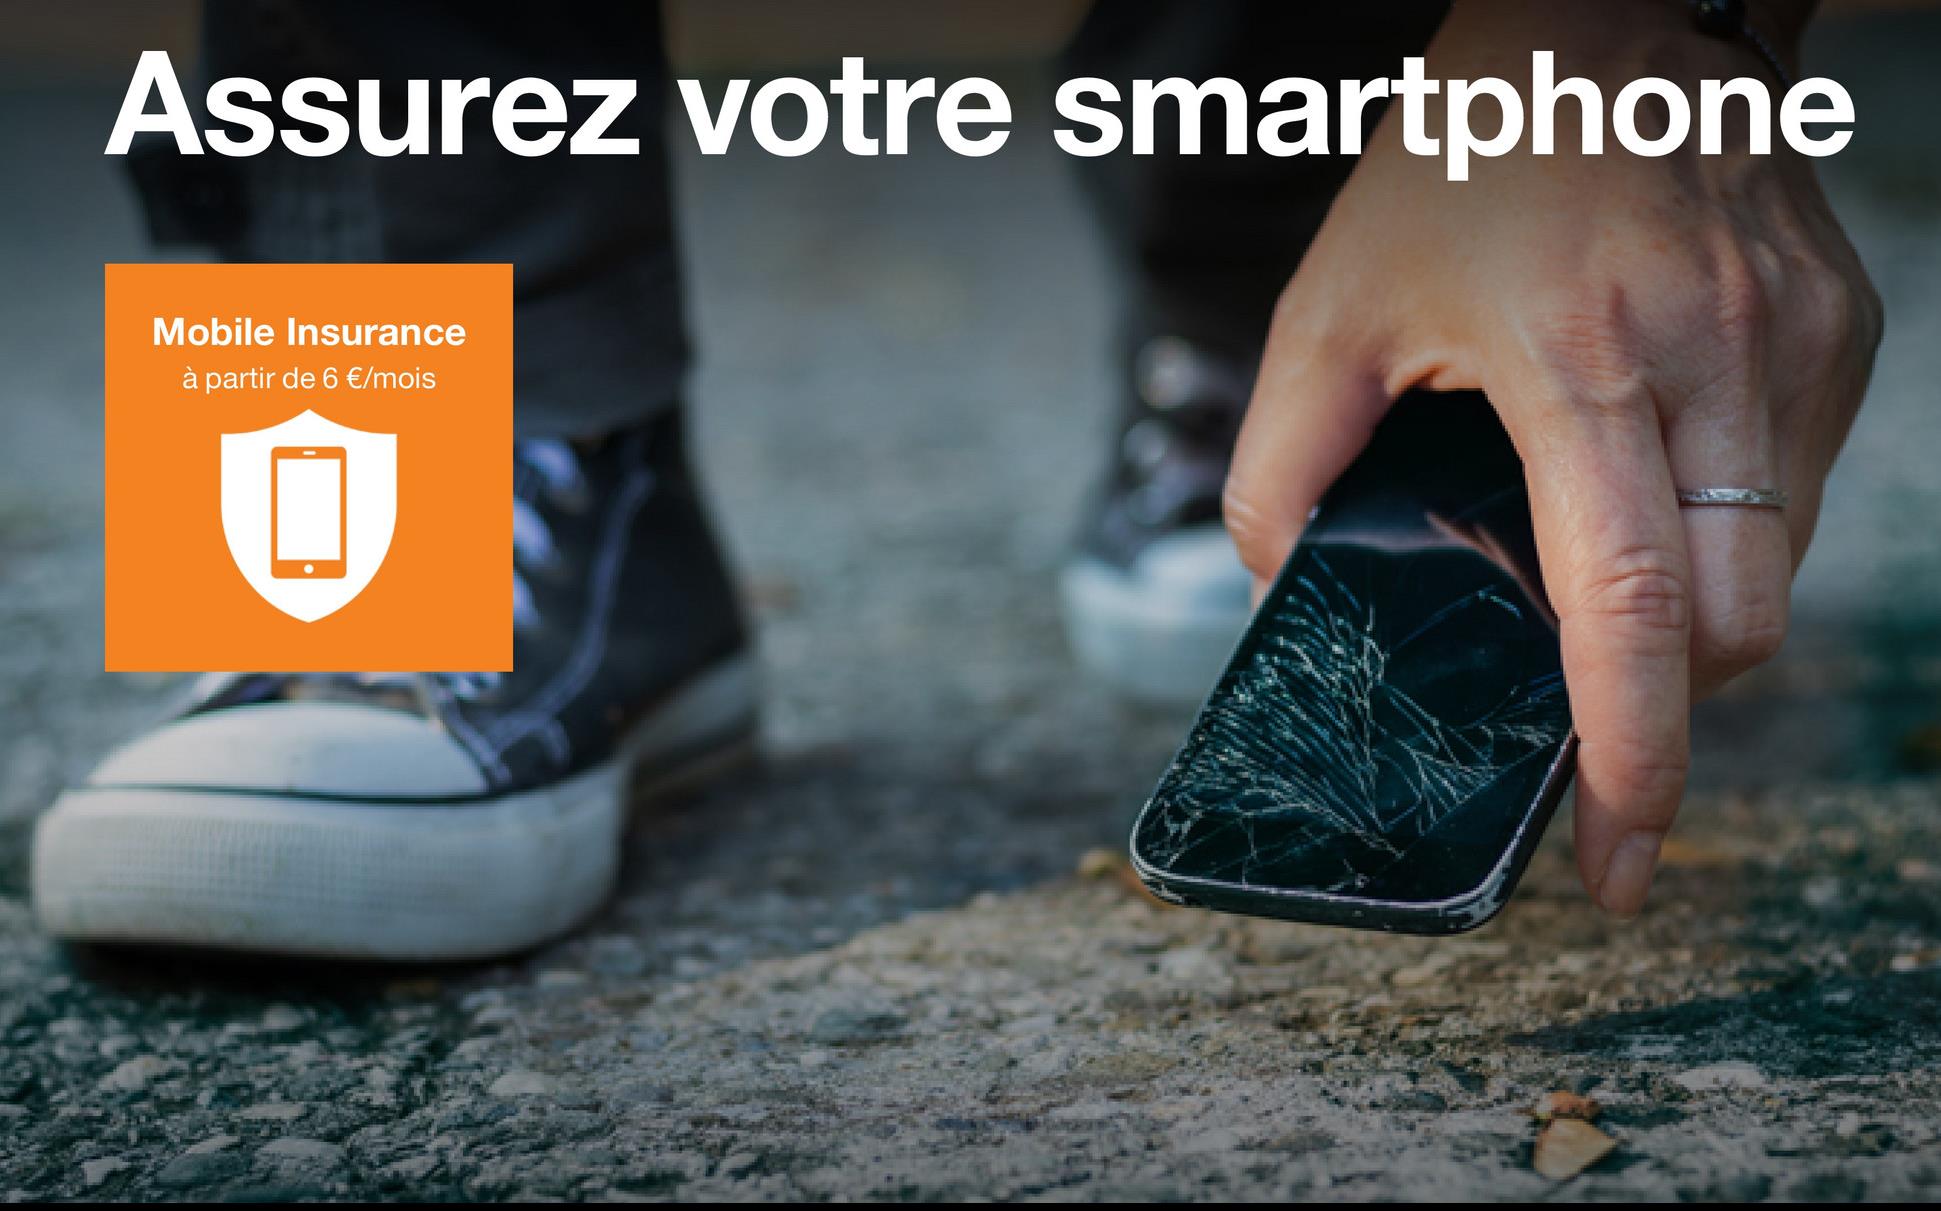 Assurez votre smartphone
Mobile Insurance
à partir de 6 €/mois
●